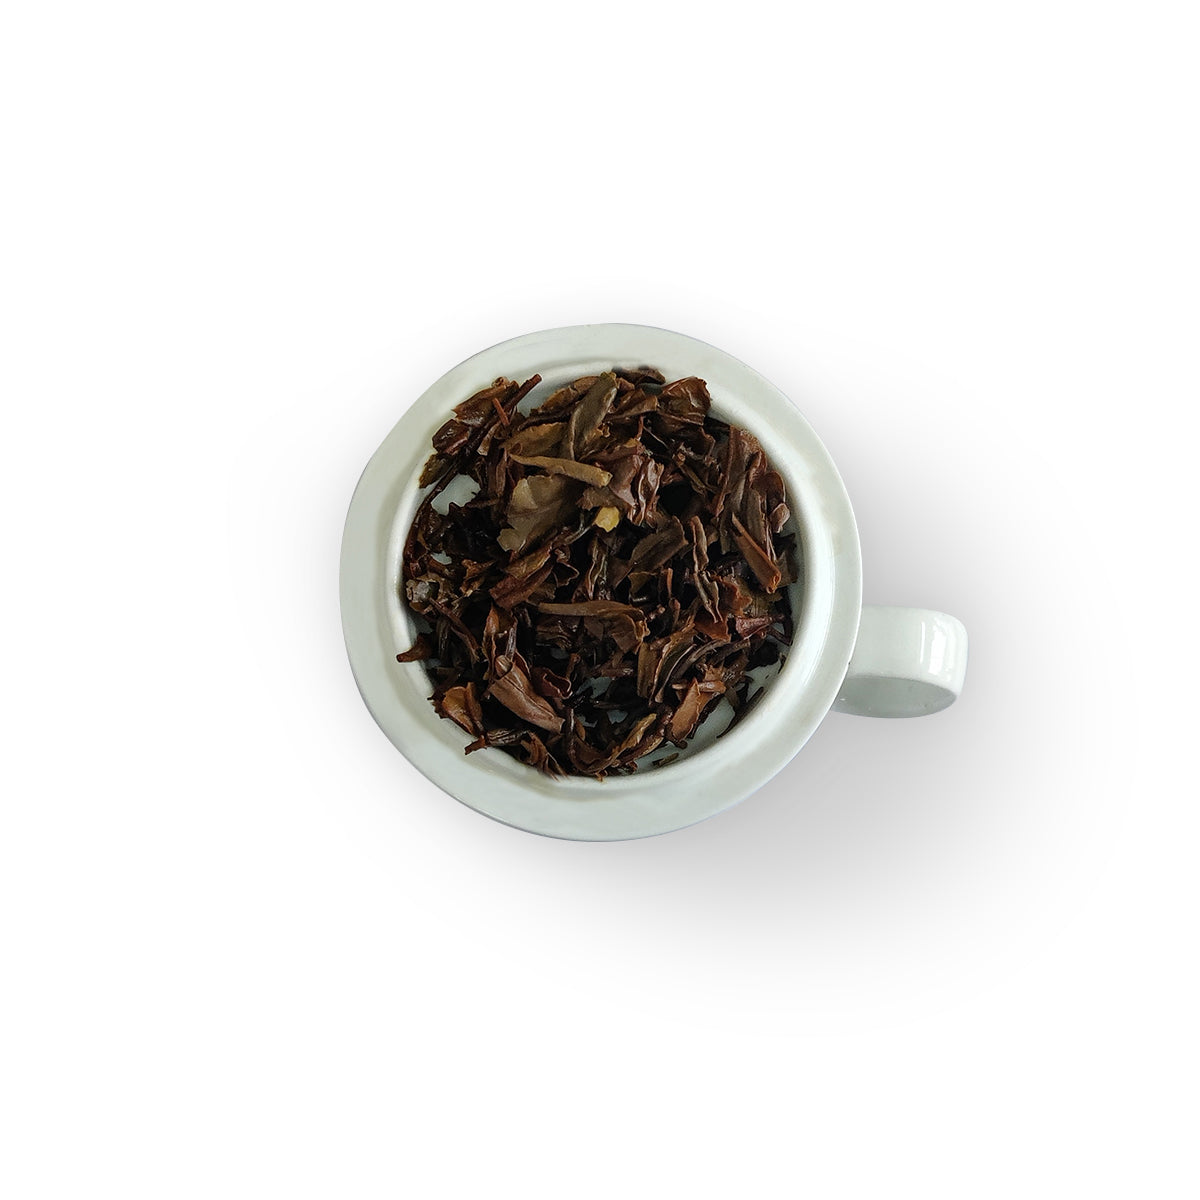 Castleton Summer Flush Black Tea 2022 – 50gm ( Pack of 2)